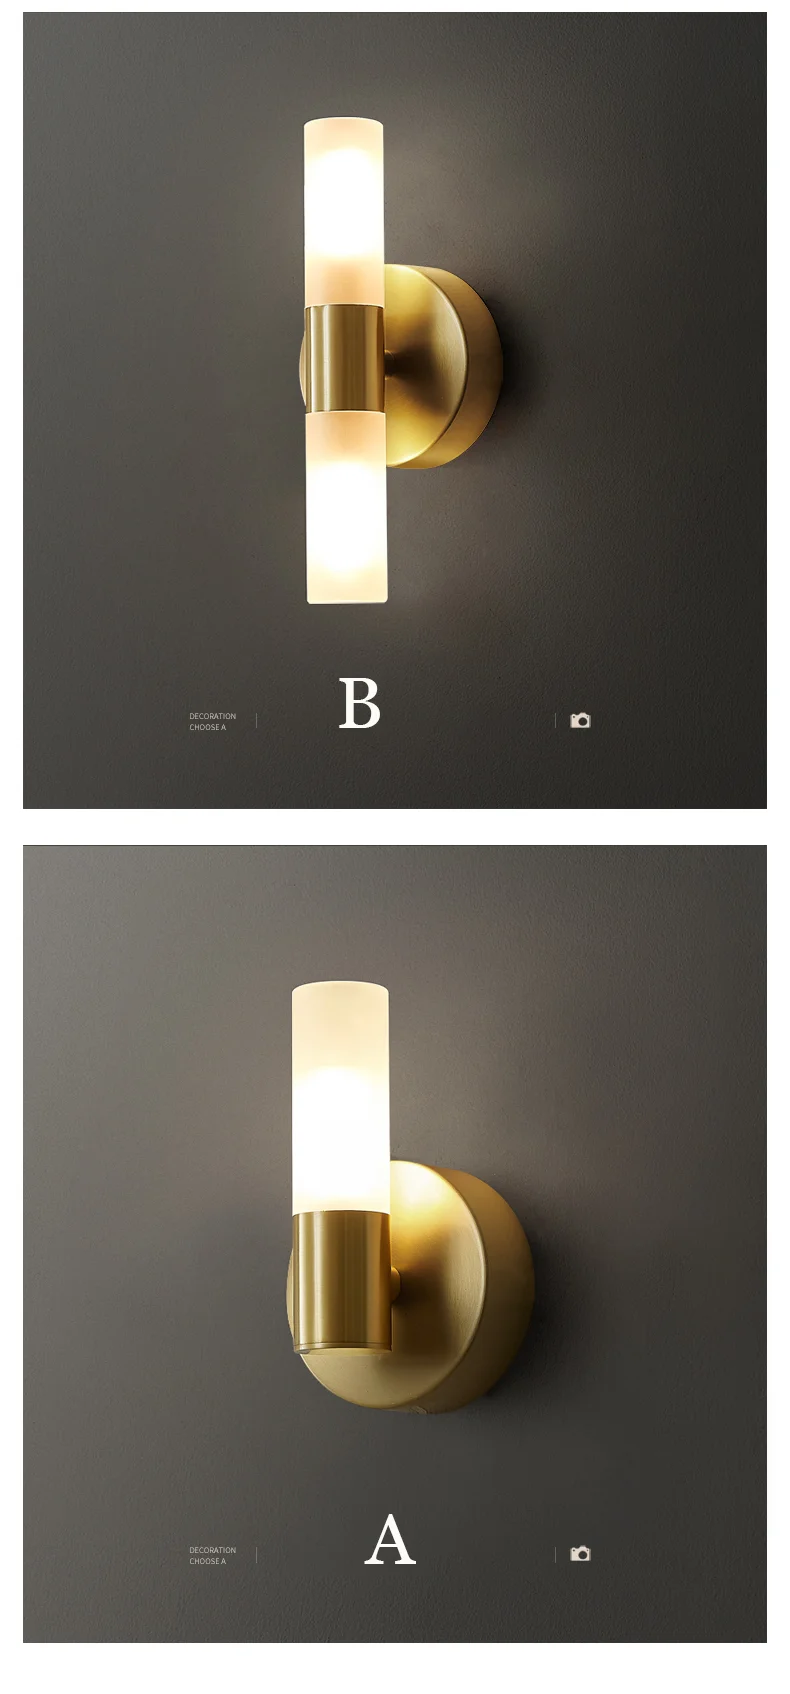 Tanie Nowoczesna lampa sufitowa LED stylowa złota rura akrylowy abażur do sklep